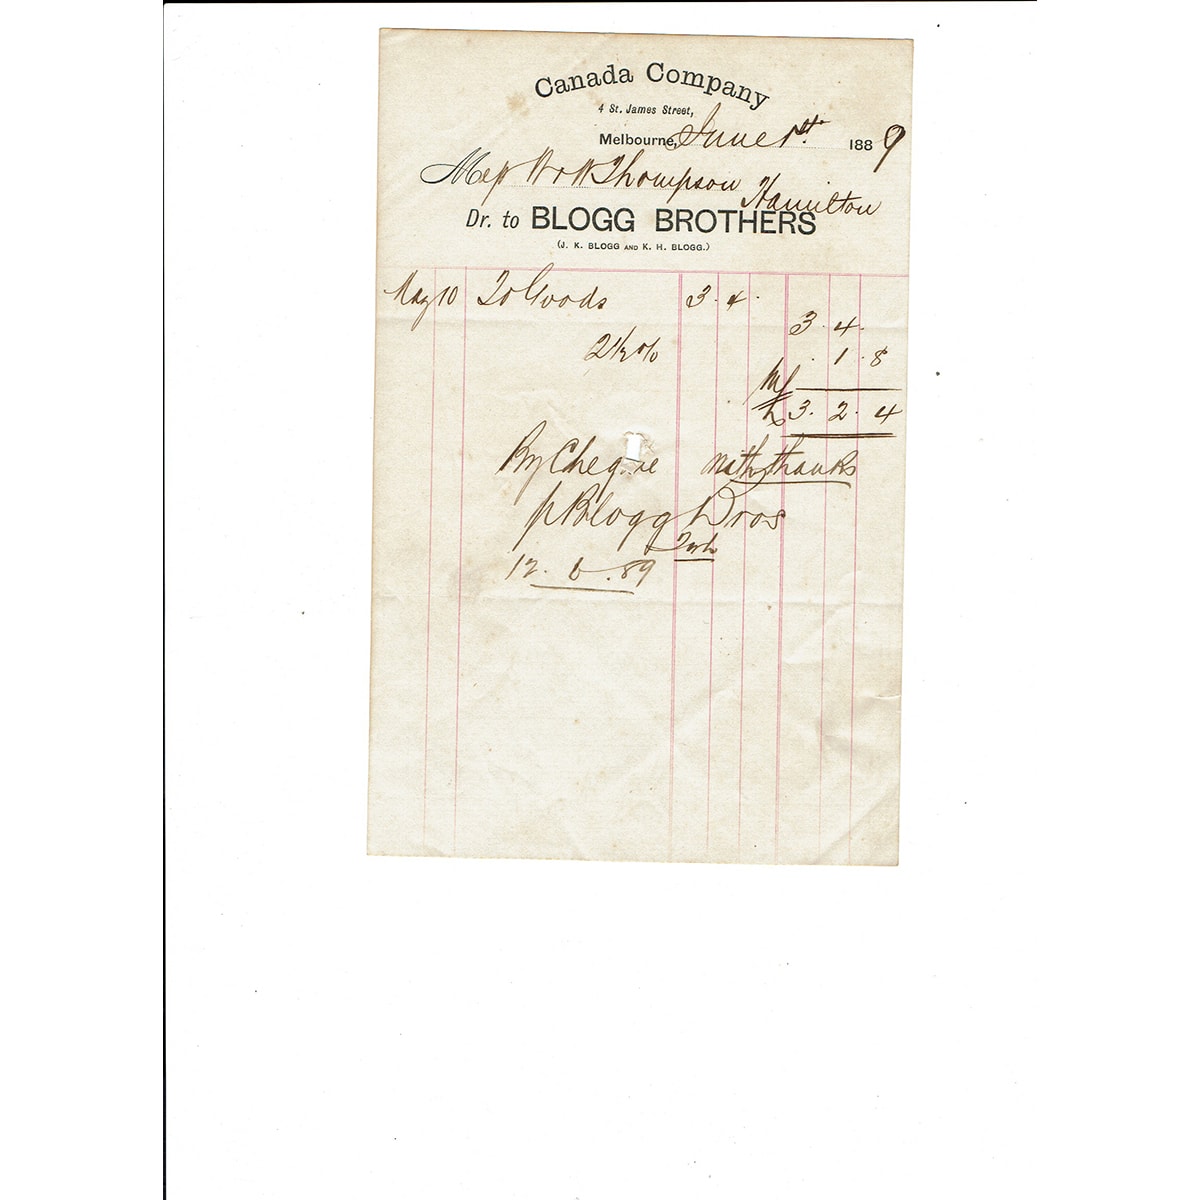 Invoice/Letterhead. Canada Company, Blogg Brothers, Melbourne. 1889. (Victoria)